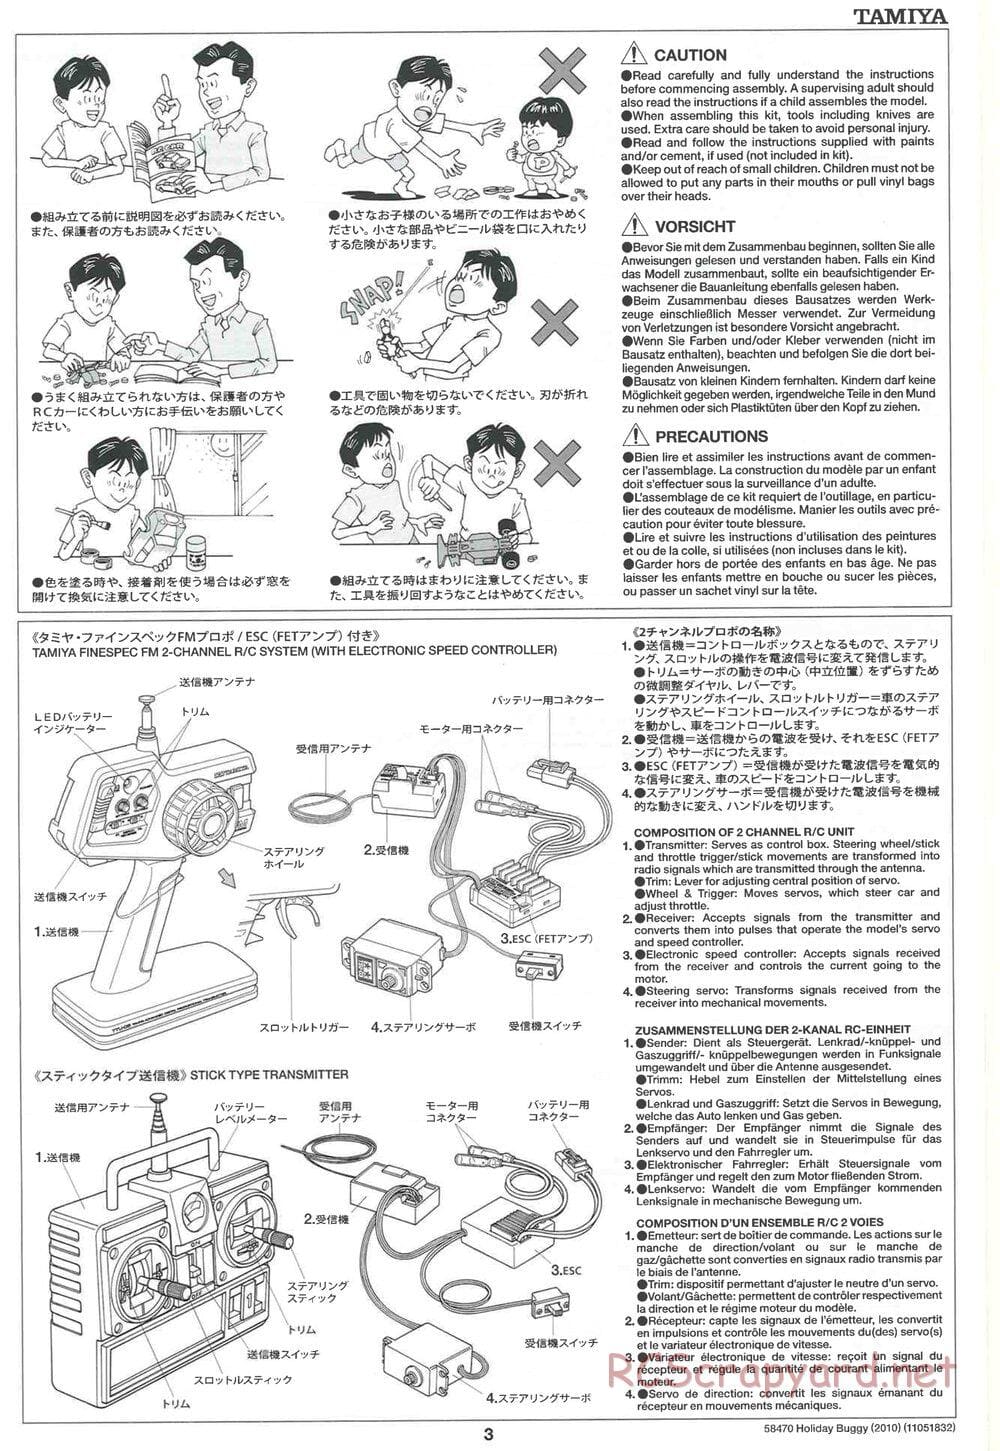 Tamiya - Holiday Buggy 2010 Chassis - Manual - Page 3